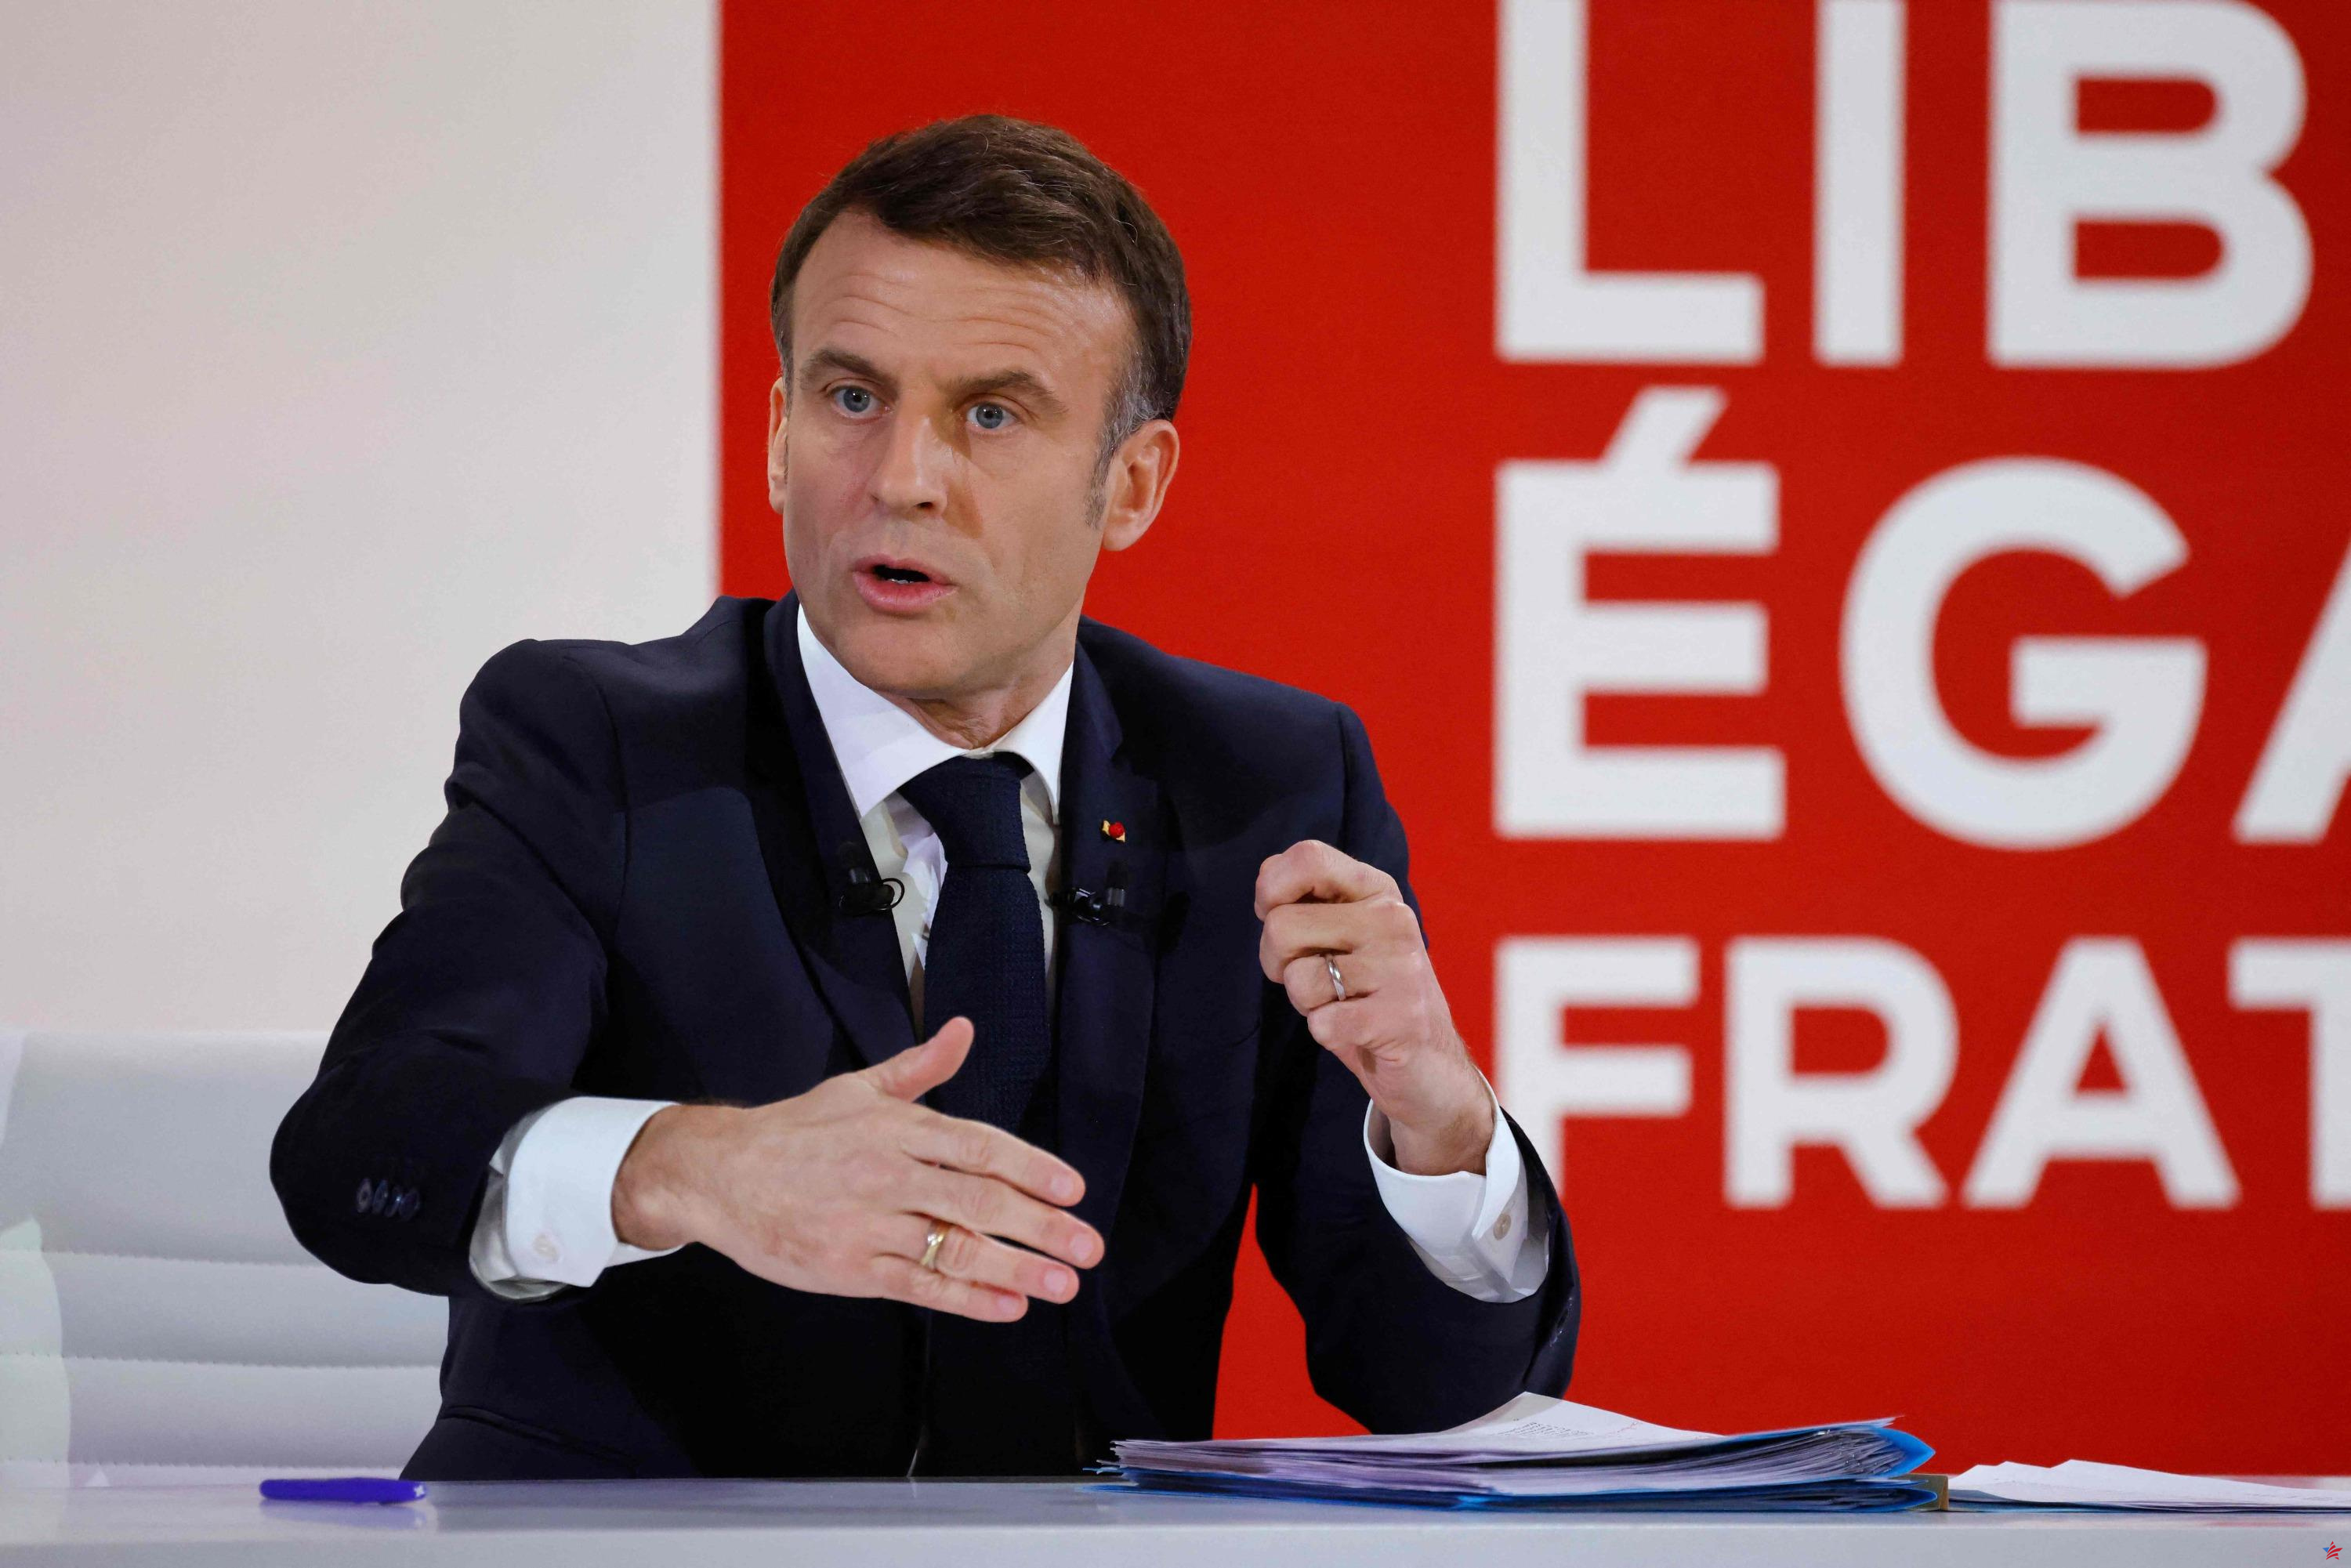 “Charla interminable”, “ejercicio digno de la ORTF”… Las oposiciones cansadas de la rueda de prensa de Emmanuel Macron